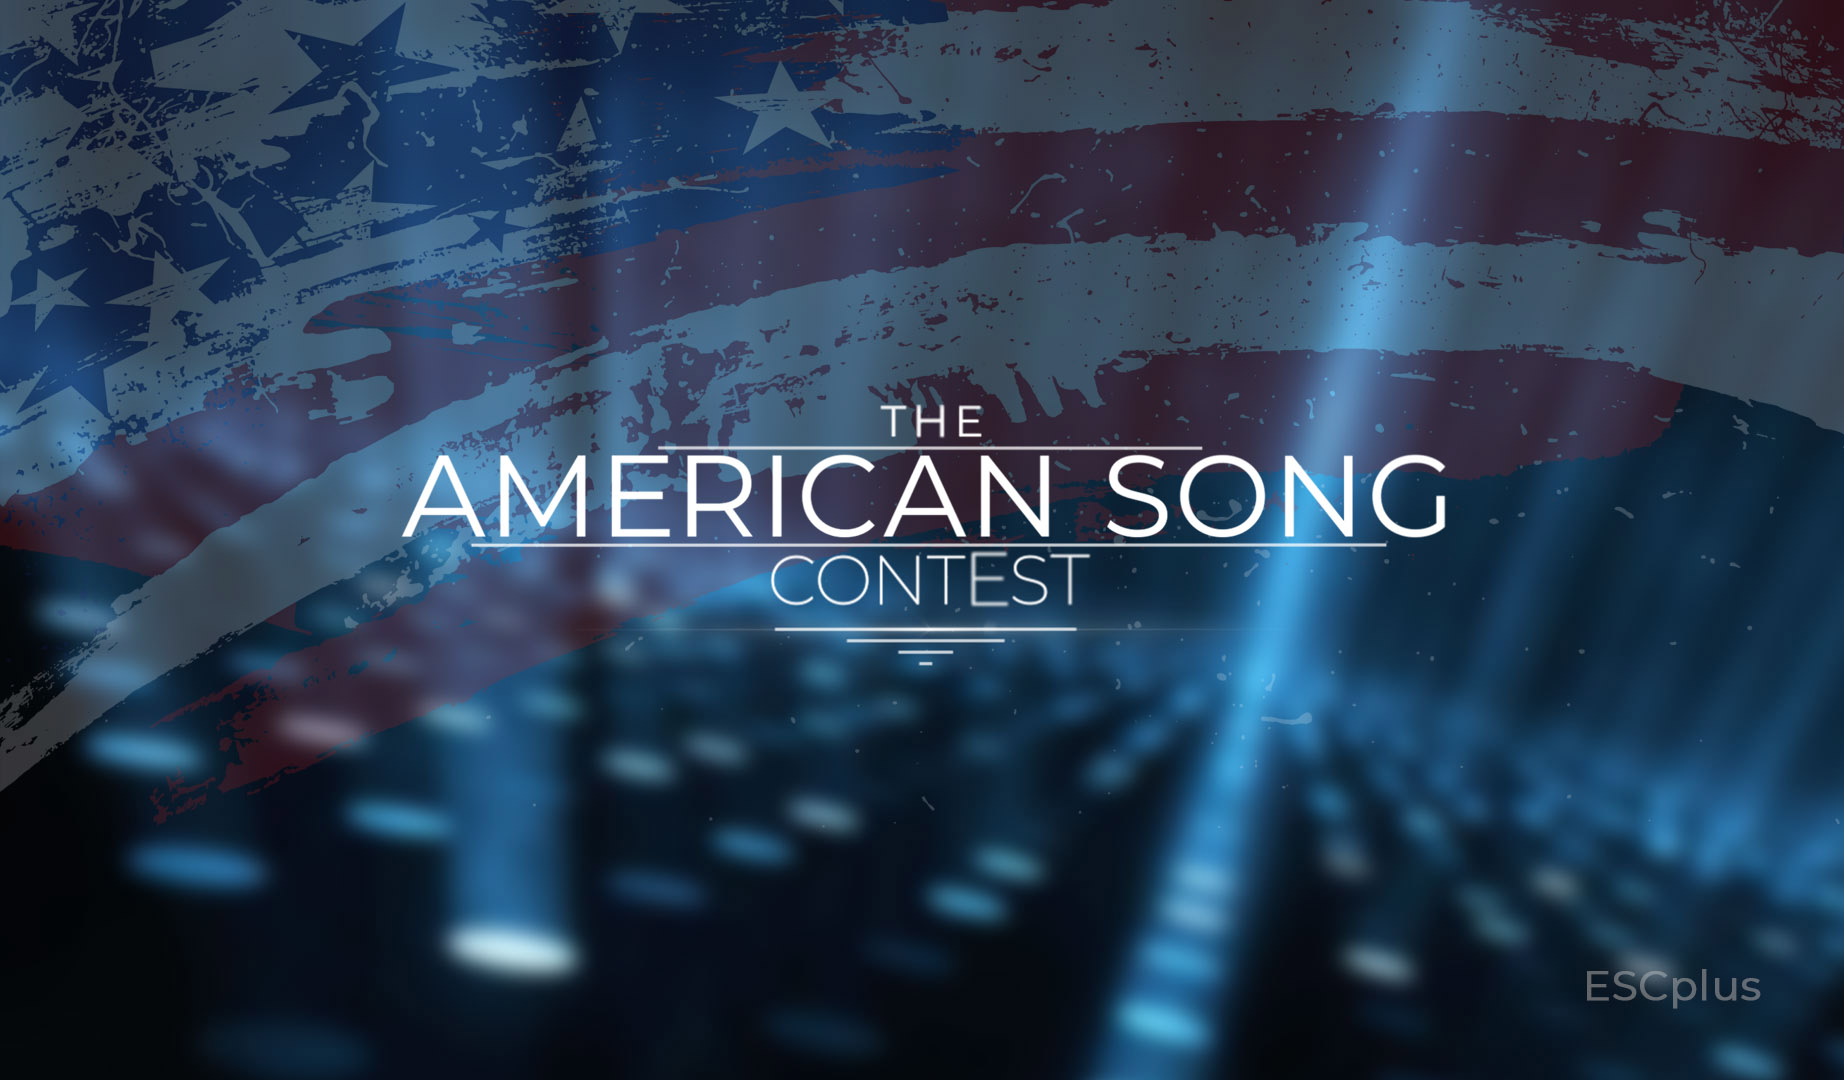 El American Song Contest arranca motores